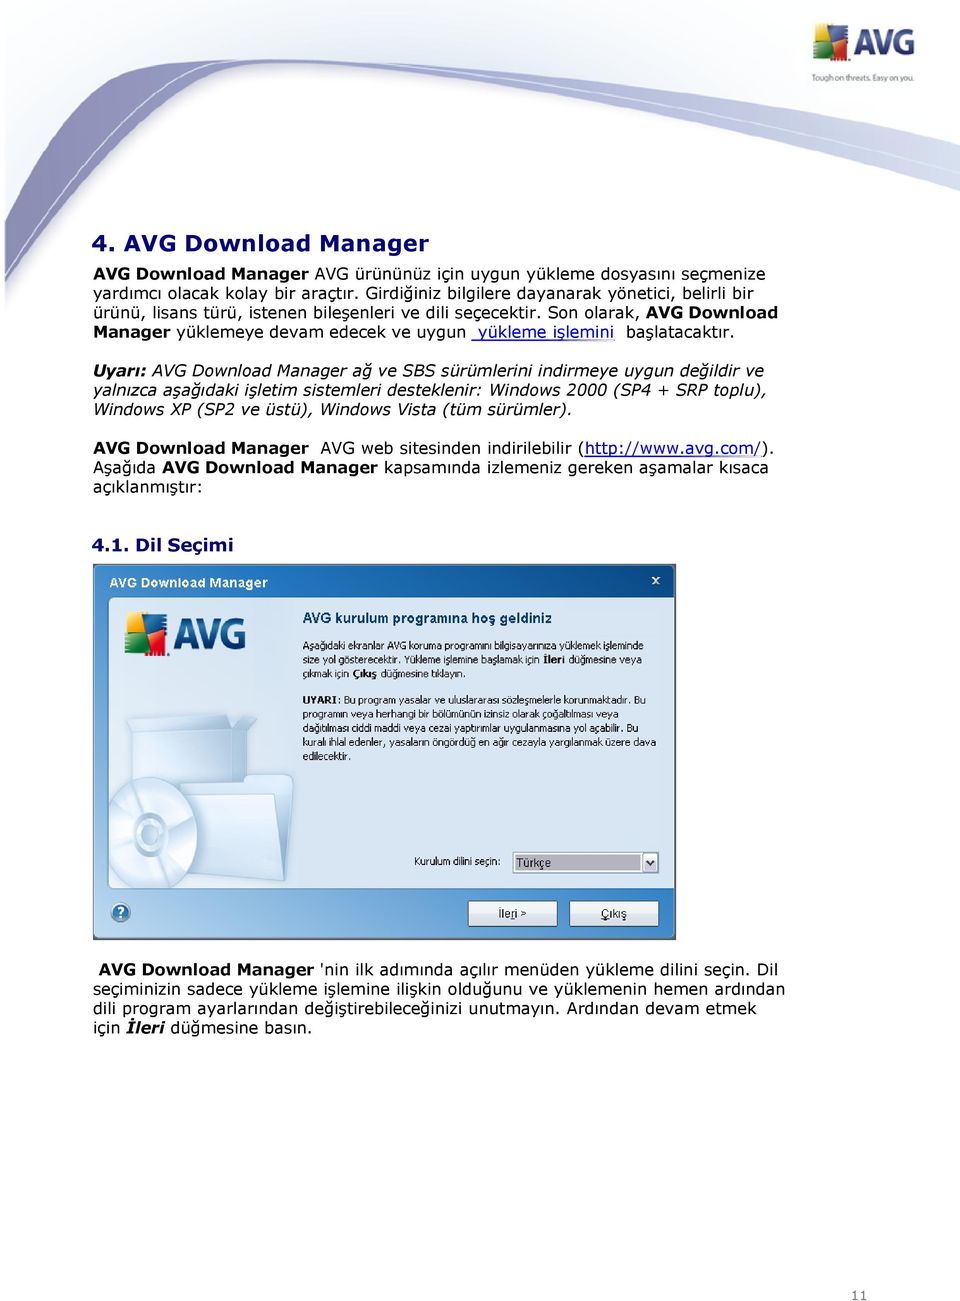 Son olarak, AVG Download Manager yüklemeye devam edecek ve uygun yükleme işlemini başlatacaktır.